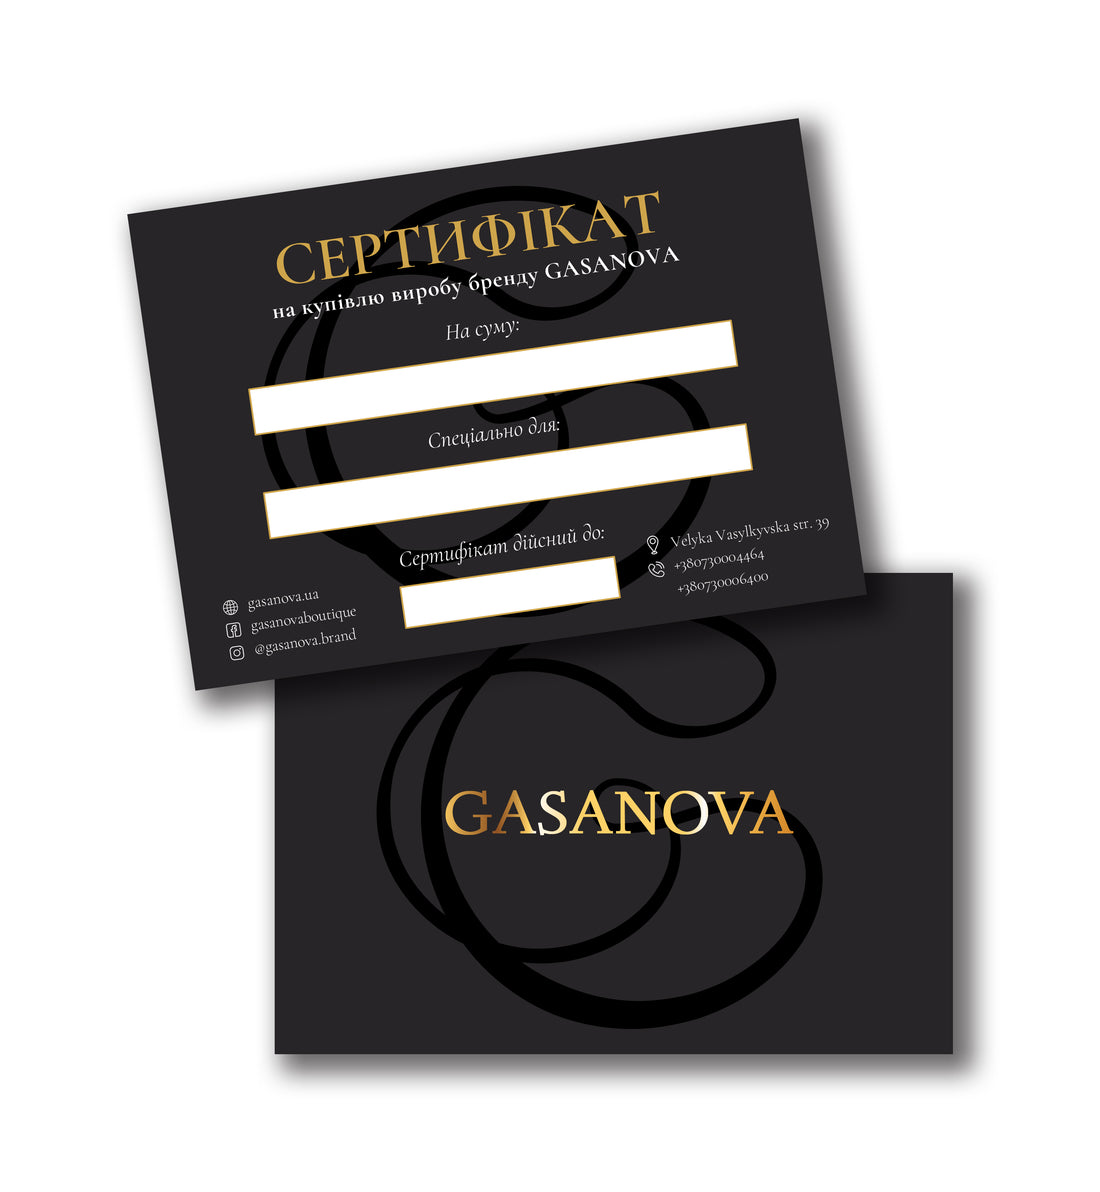 Gasanova gift card